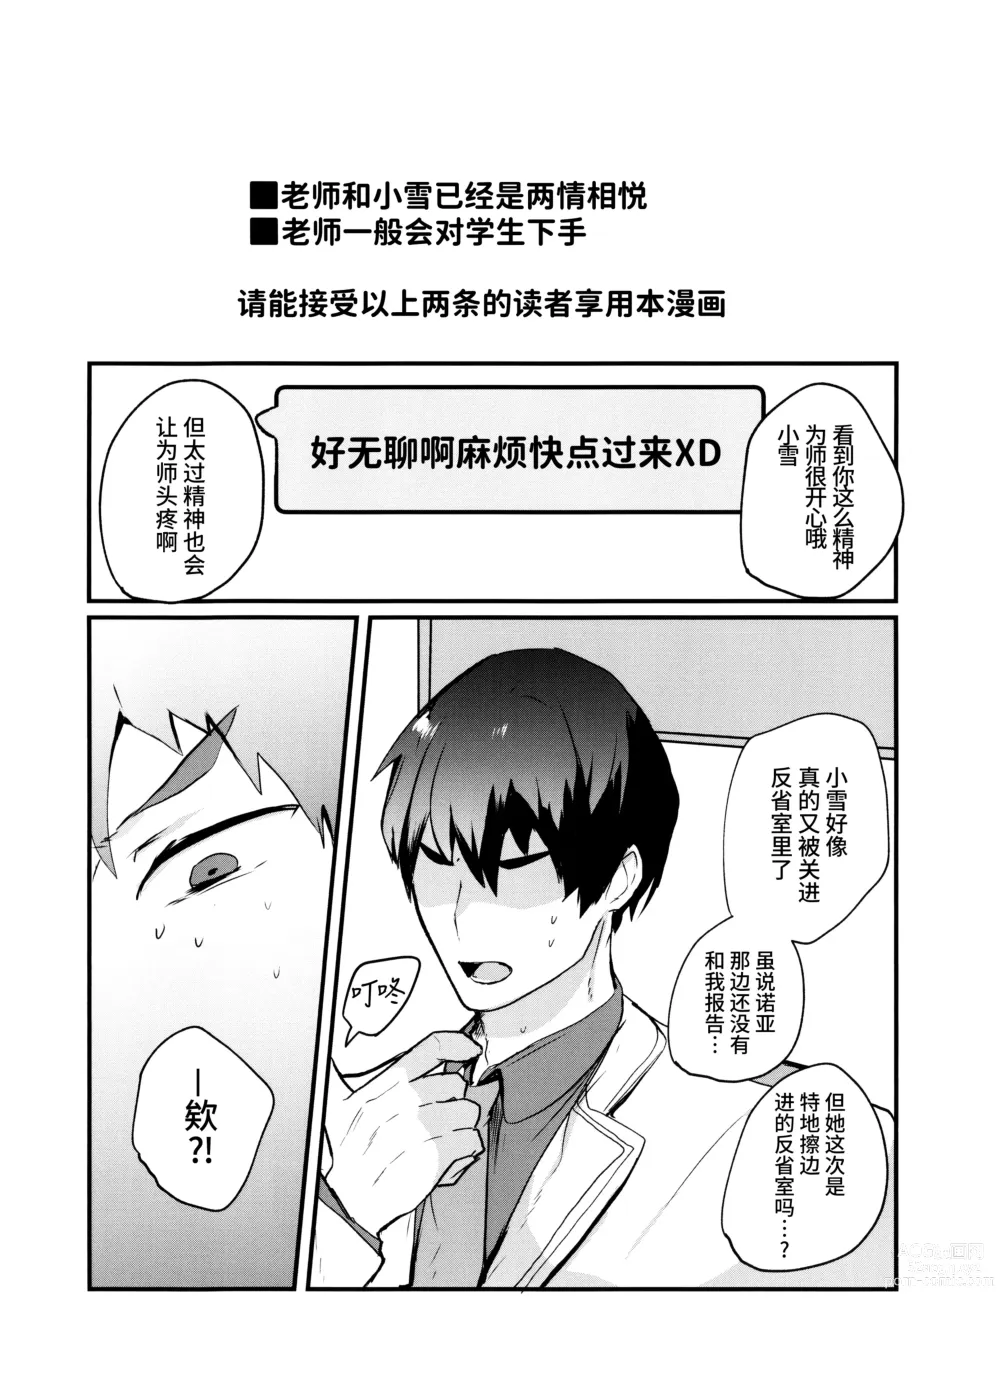 Page 3 of doujinshi 这样子的小雪感觉如何呀?!